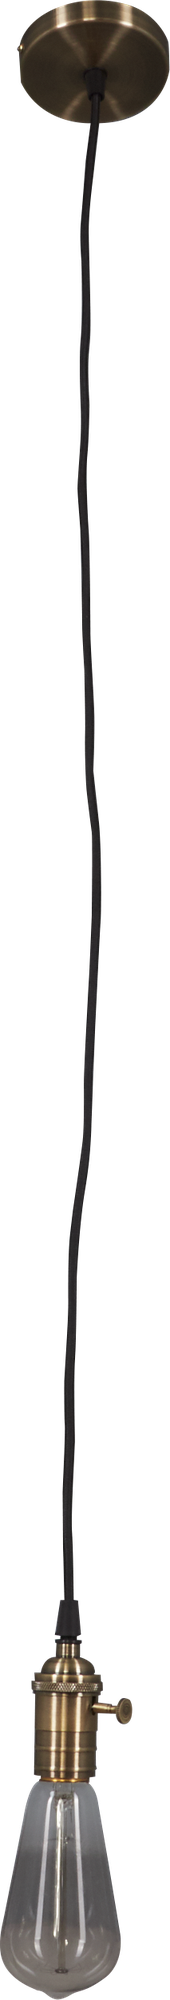 Патрон декоративный шнур 1 метр E27 цвет бронза